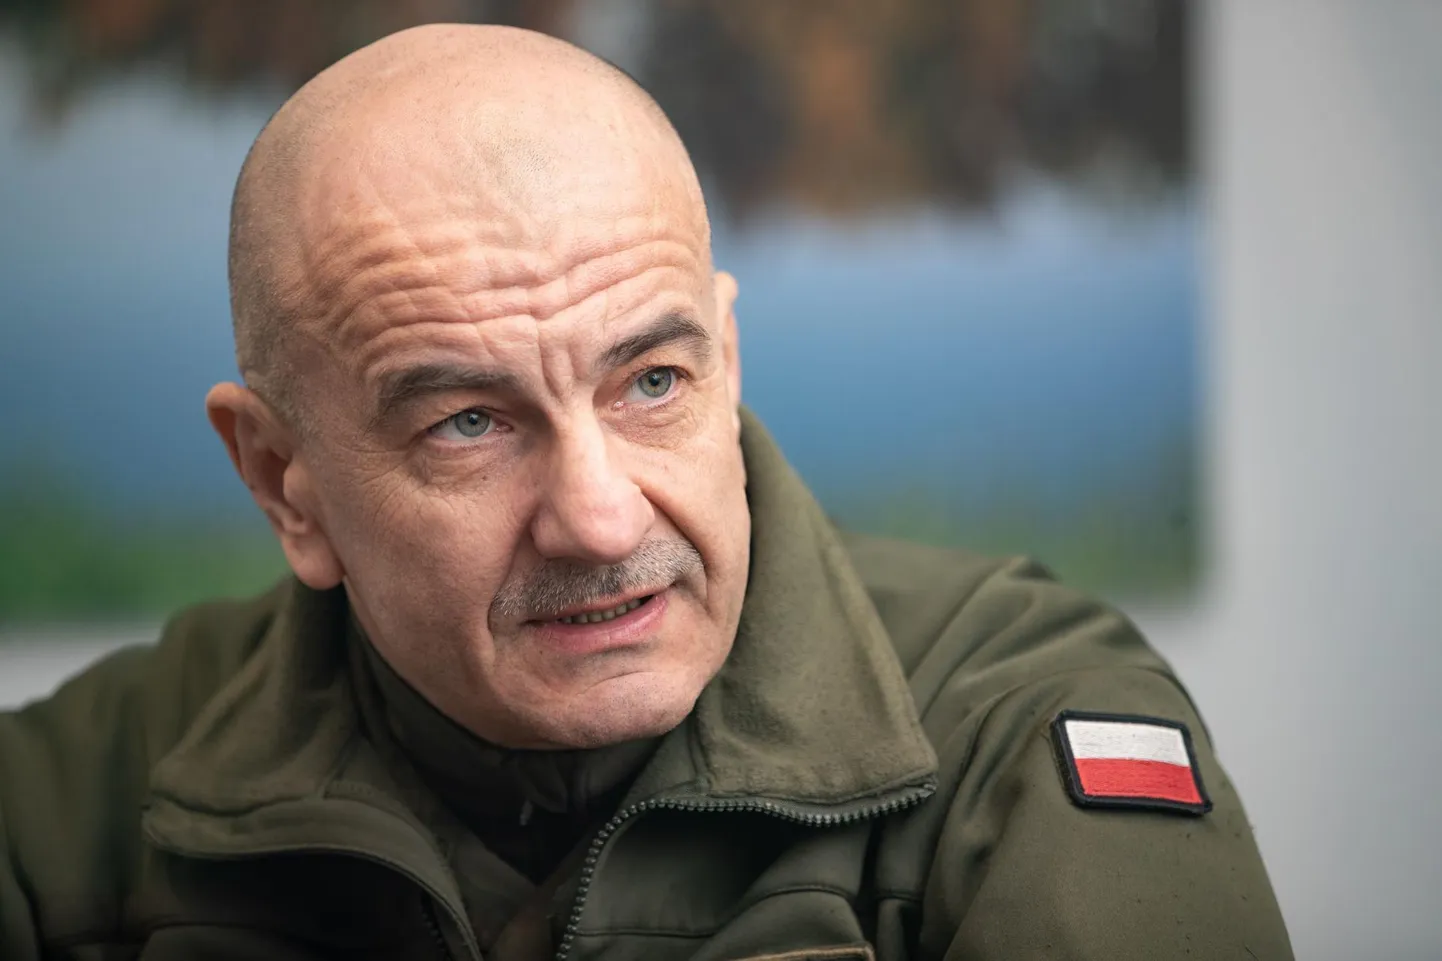 Poola kaitseväe juhataja kindral Rajmund Andrzejczaki sõnul on Valgevene hübriidrünnak uue põlvkonna sõjapidamise musternäidis.